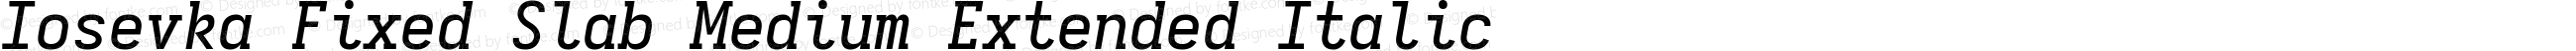 Iosevka Fixed Slab Medium Extended Italic